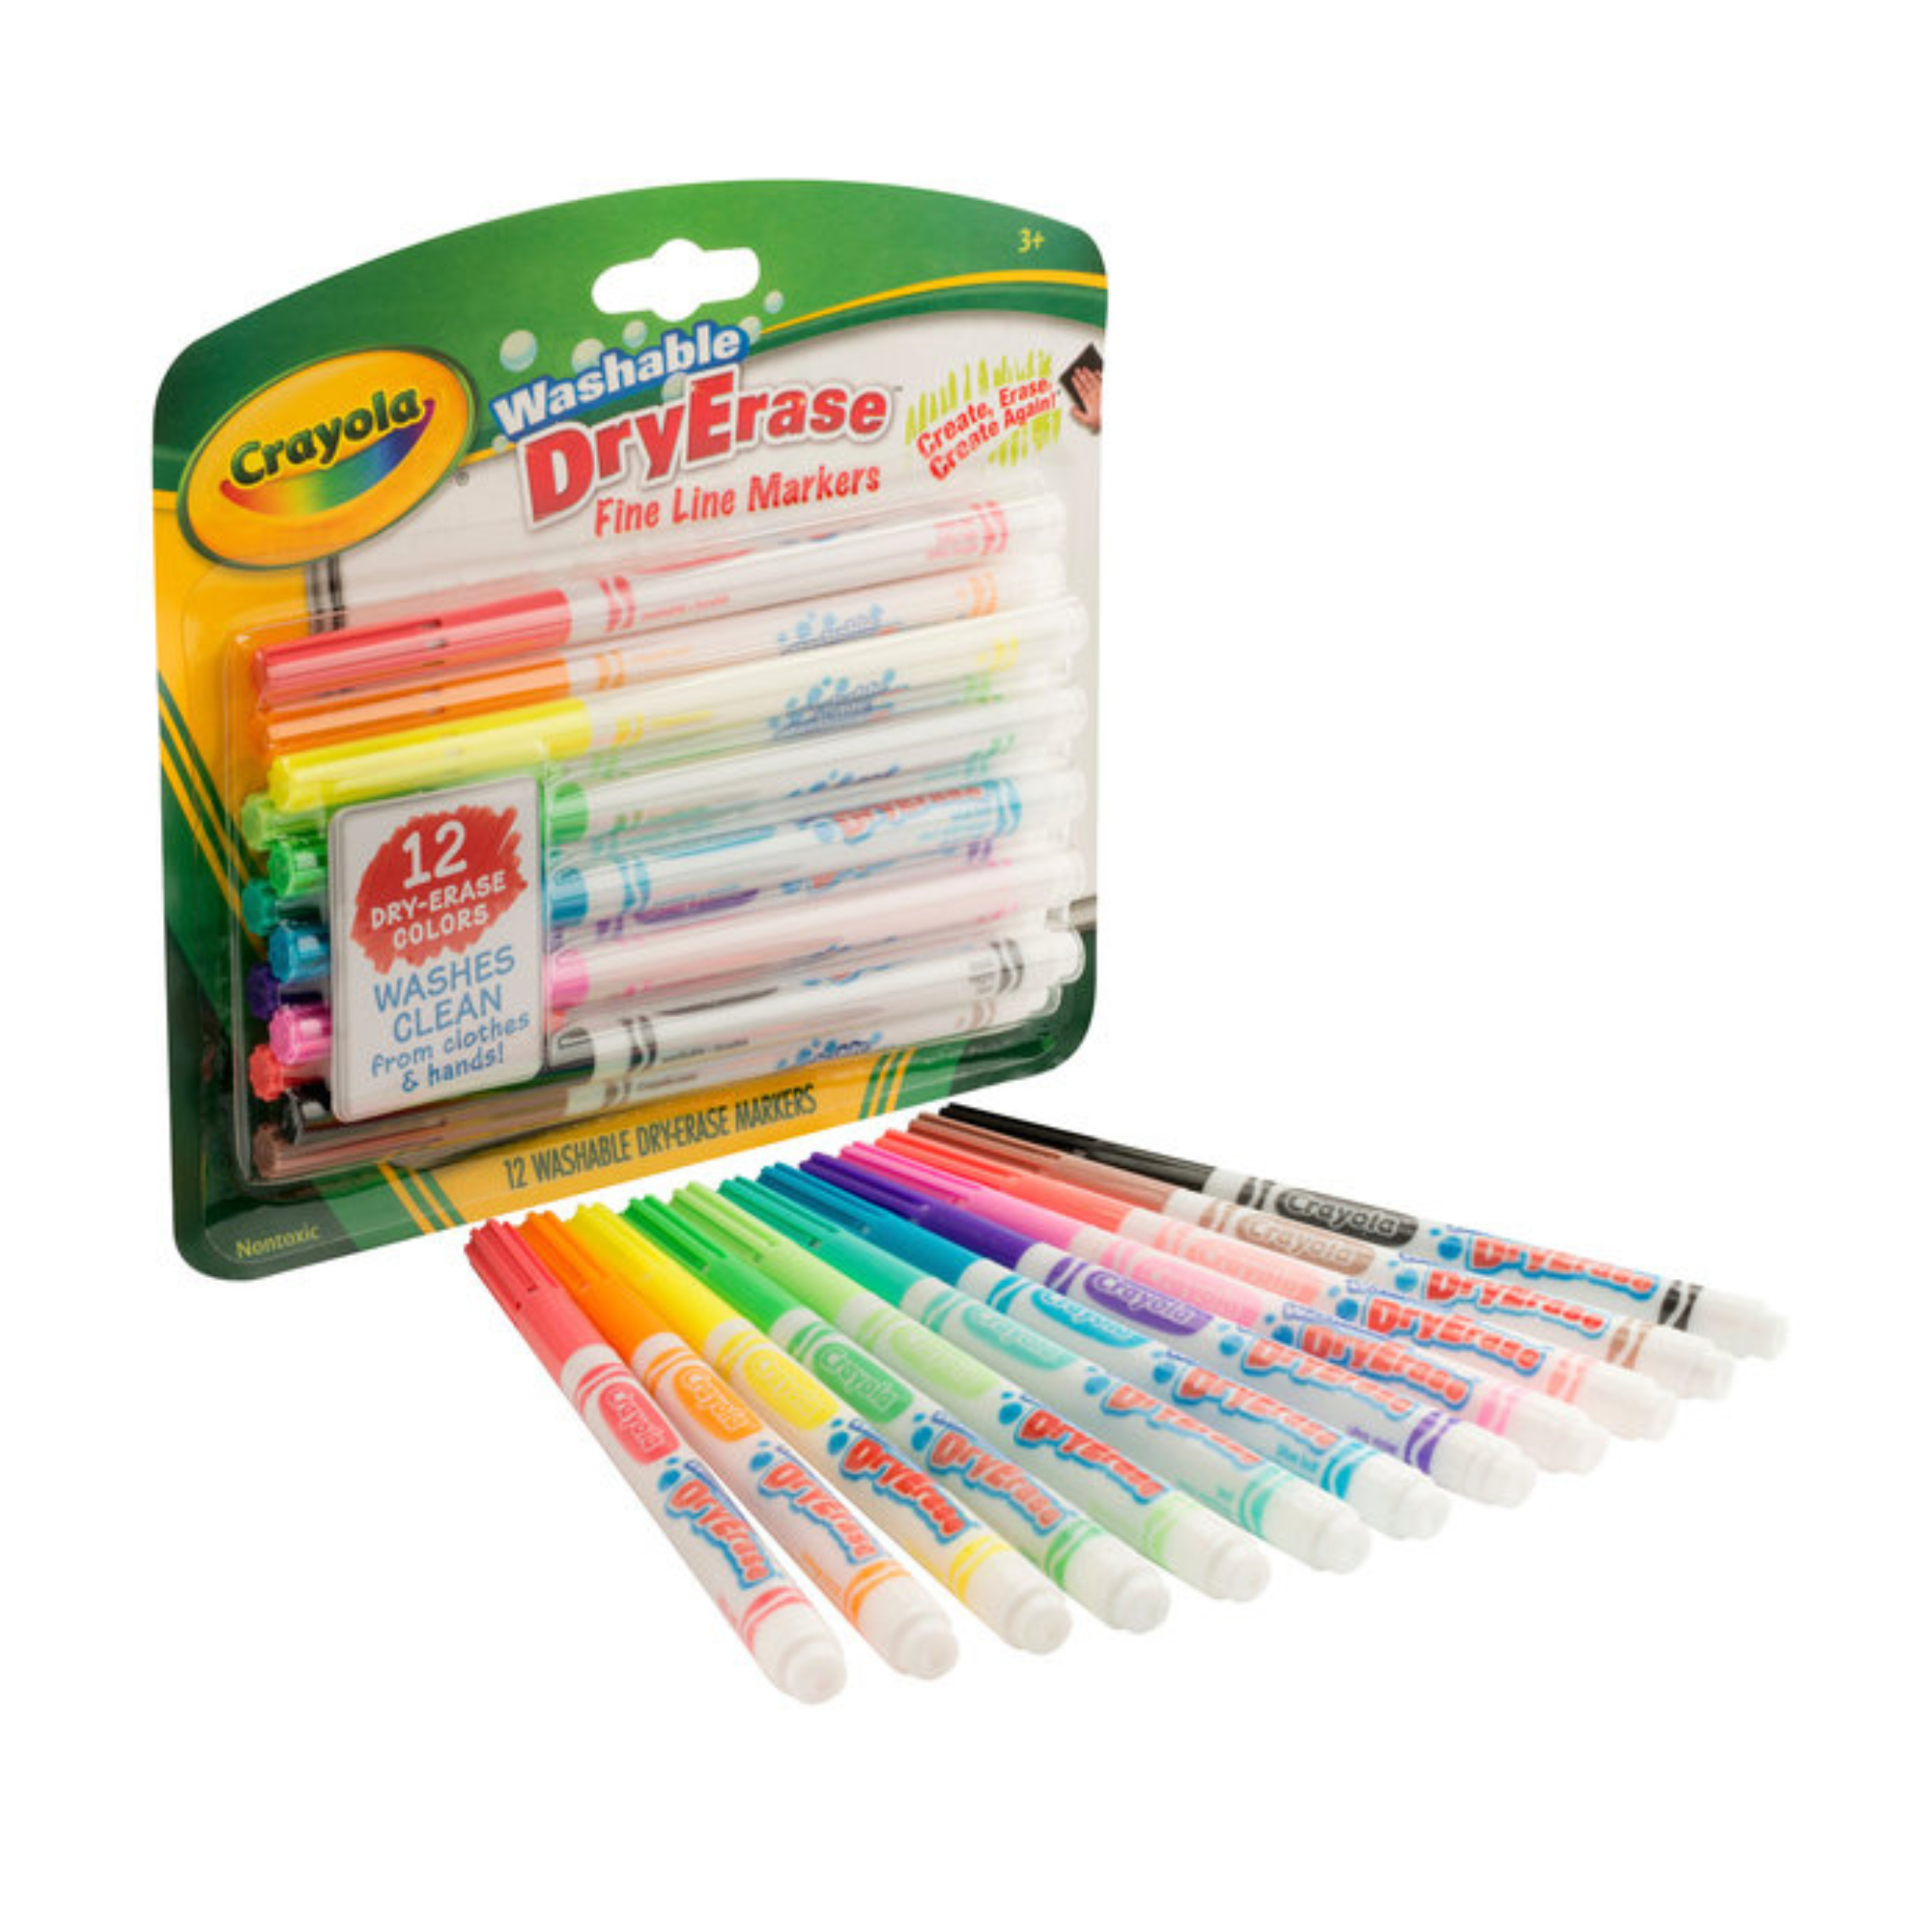 Crayola 8 Washable Dry Erase Markers Wholesale